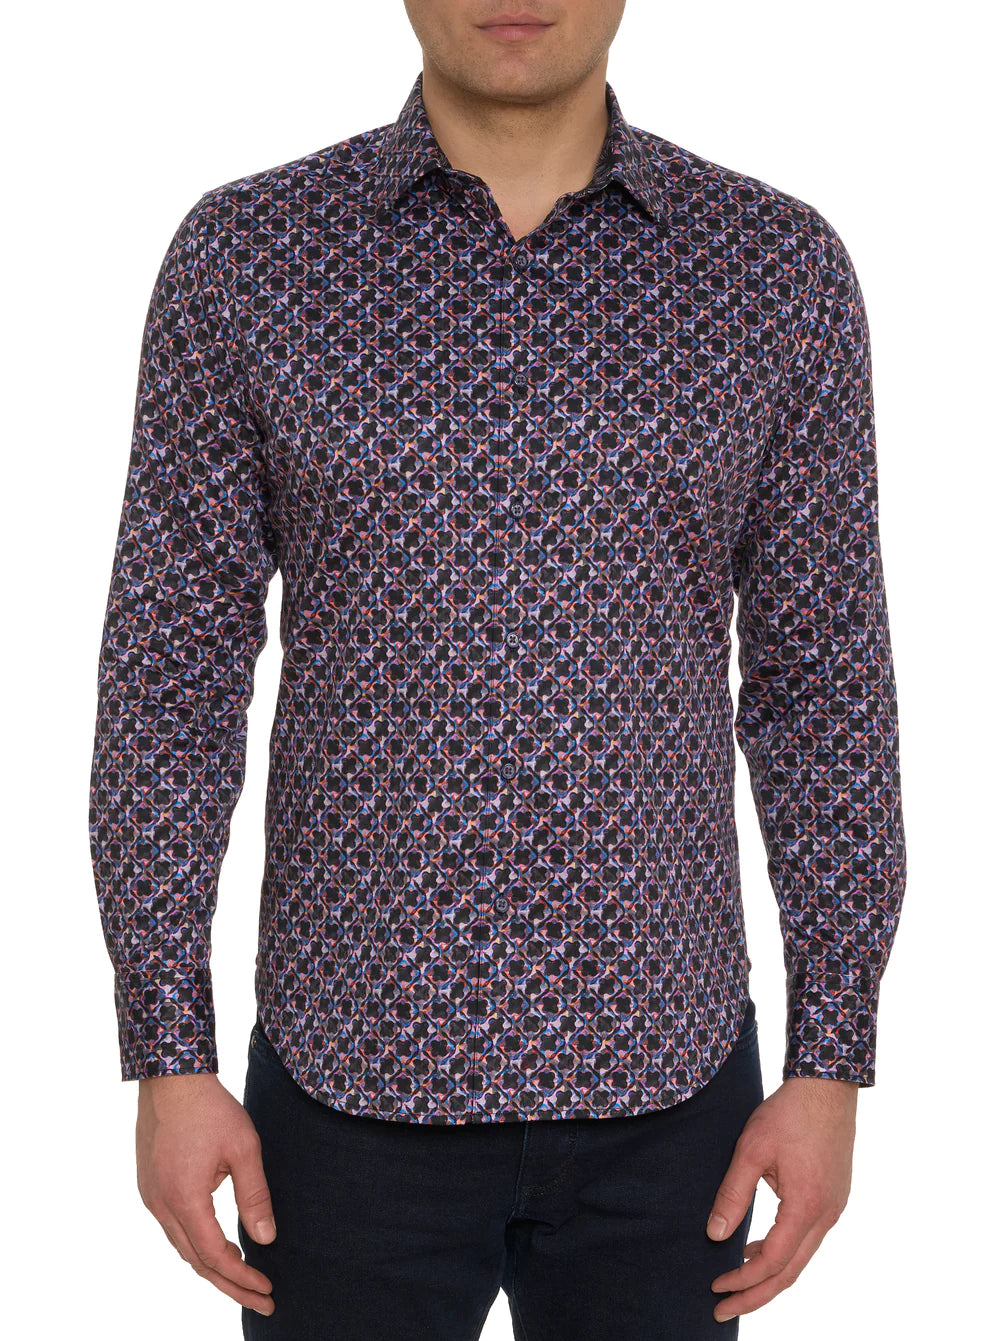 Robert Graham Yeni Button Up L/S Dress Shirt - Purpleprint - 1 - Tops - Button Up Dress Shirt